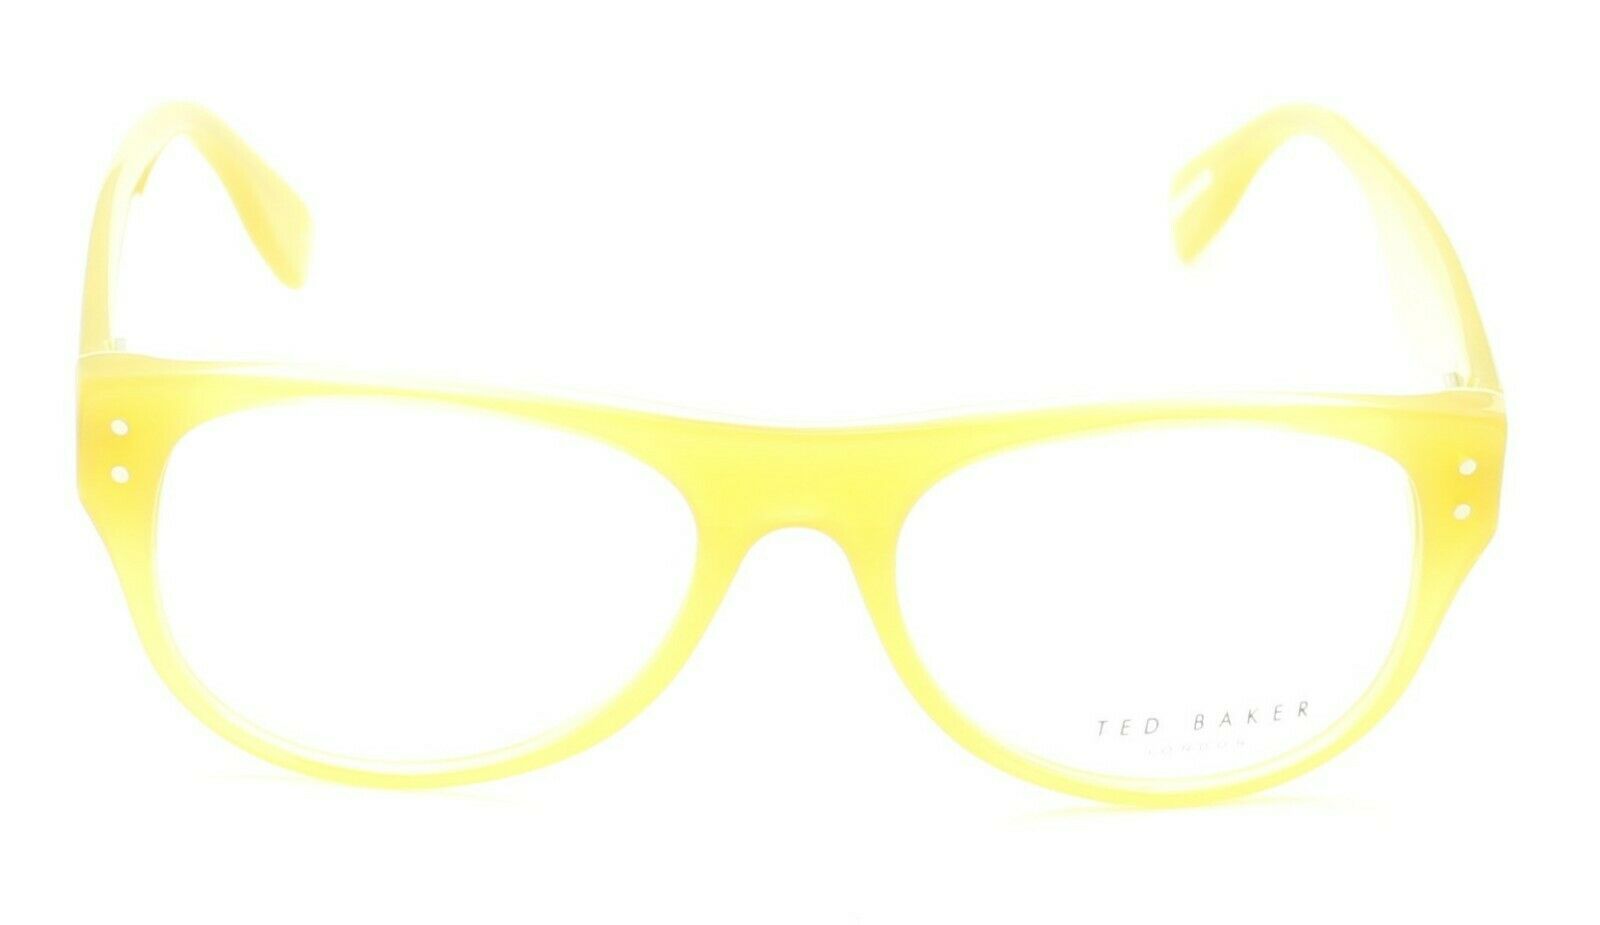 TED BAKER Colebrook 8071 442 54mm FRAMES Glasses Eyeglasses RX Optical - New